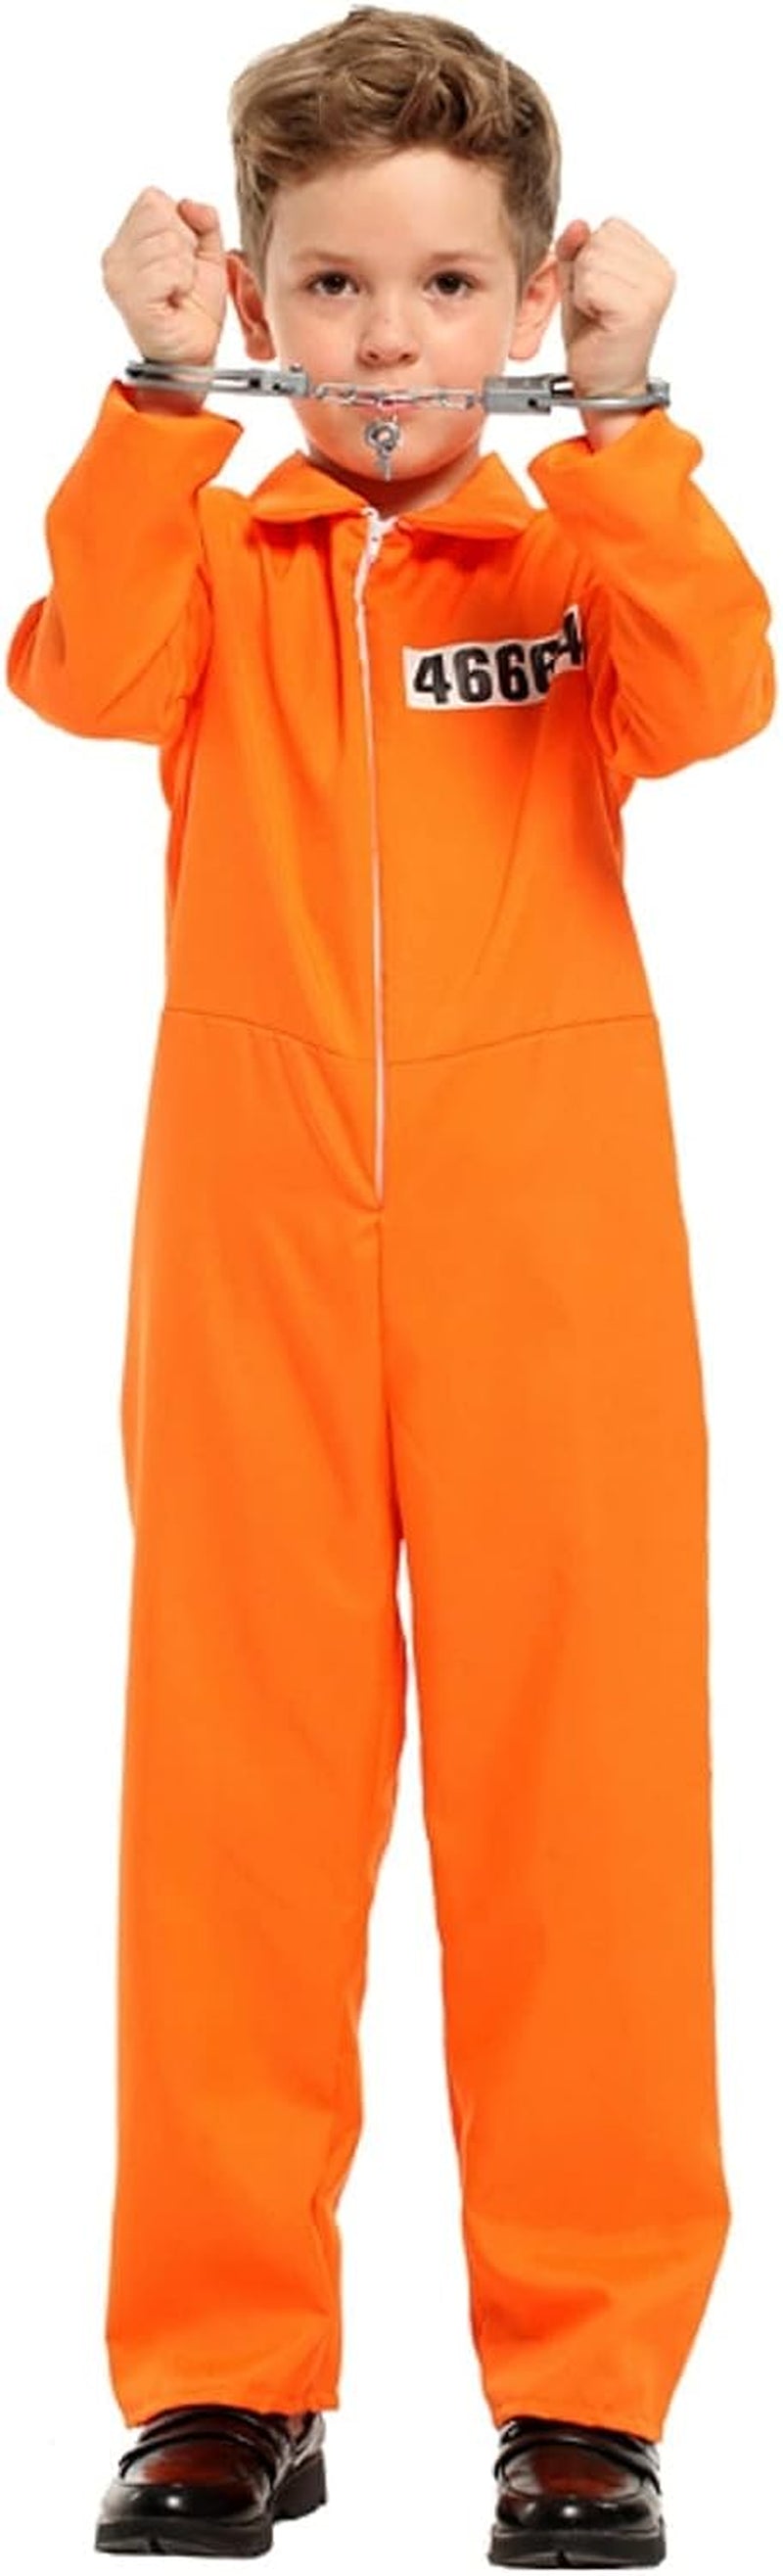 ZNTU Prisoner Costume Kids,Orange Prisoner Jumpsuit with Handcuffs,Jailbird Inmate Prison Uniform  ZNTU   